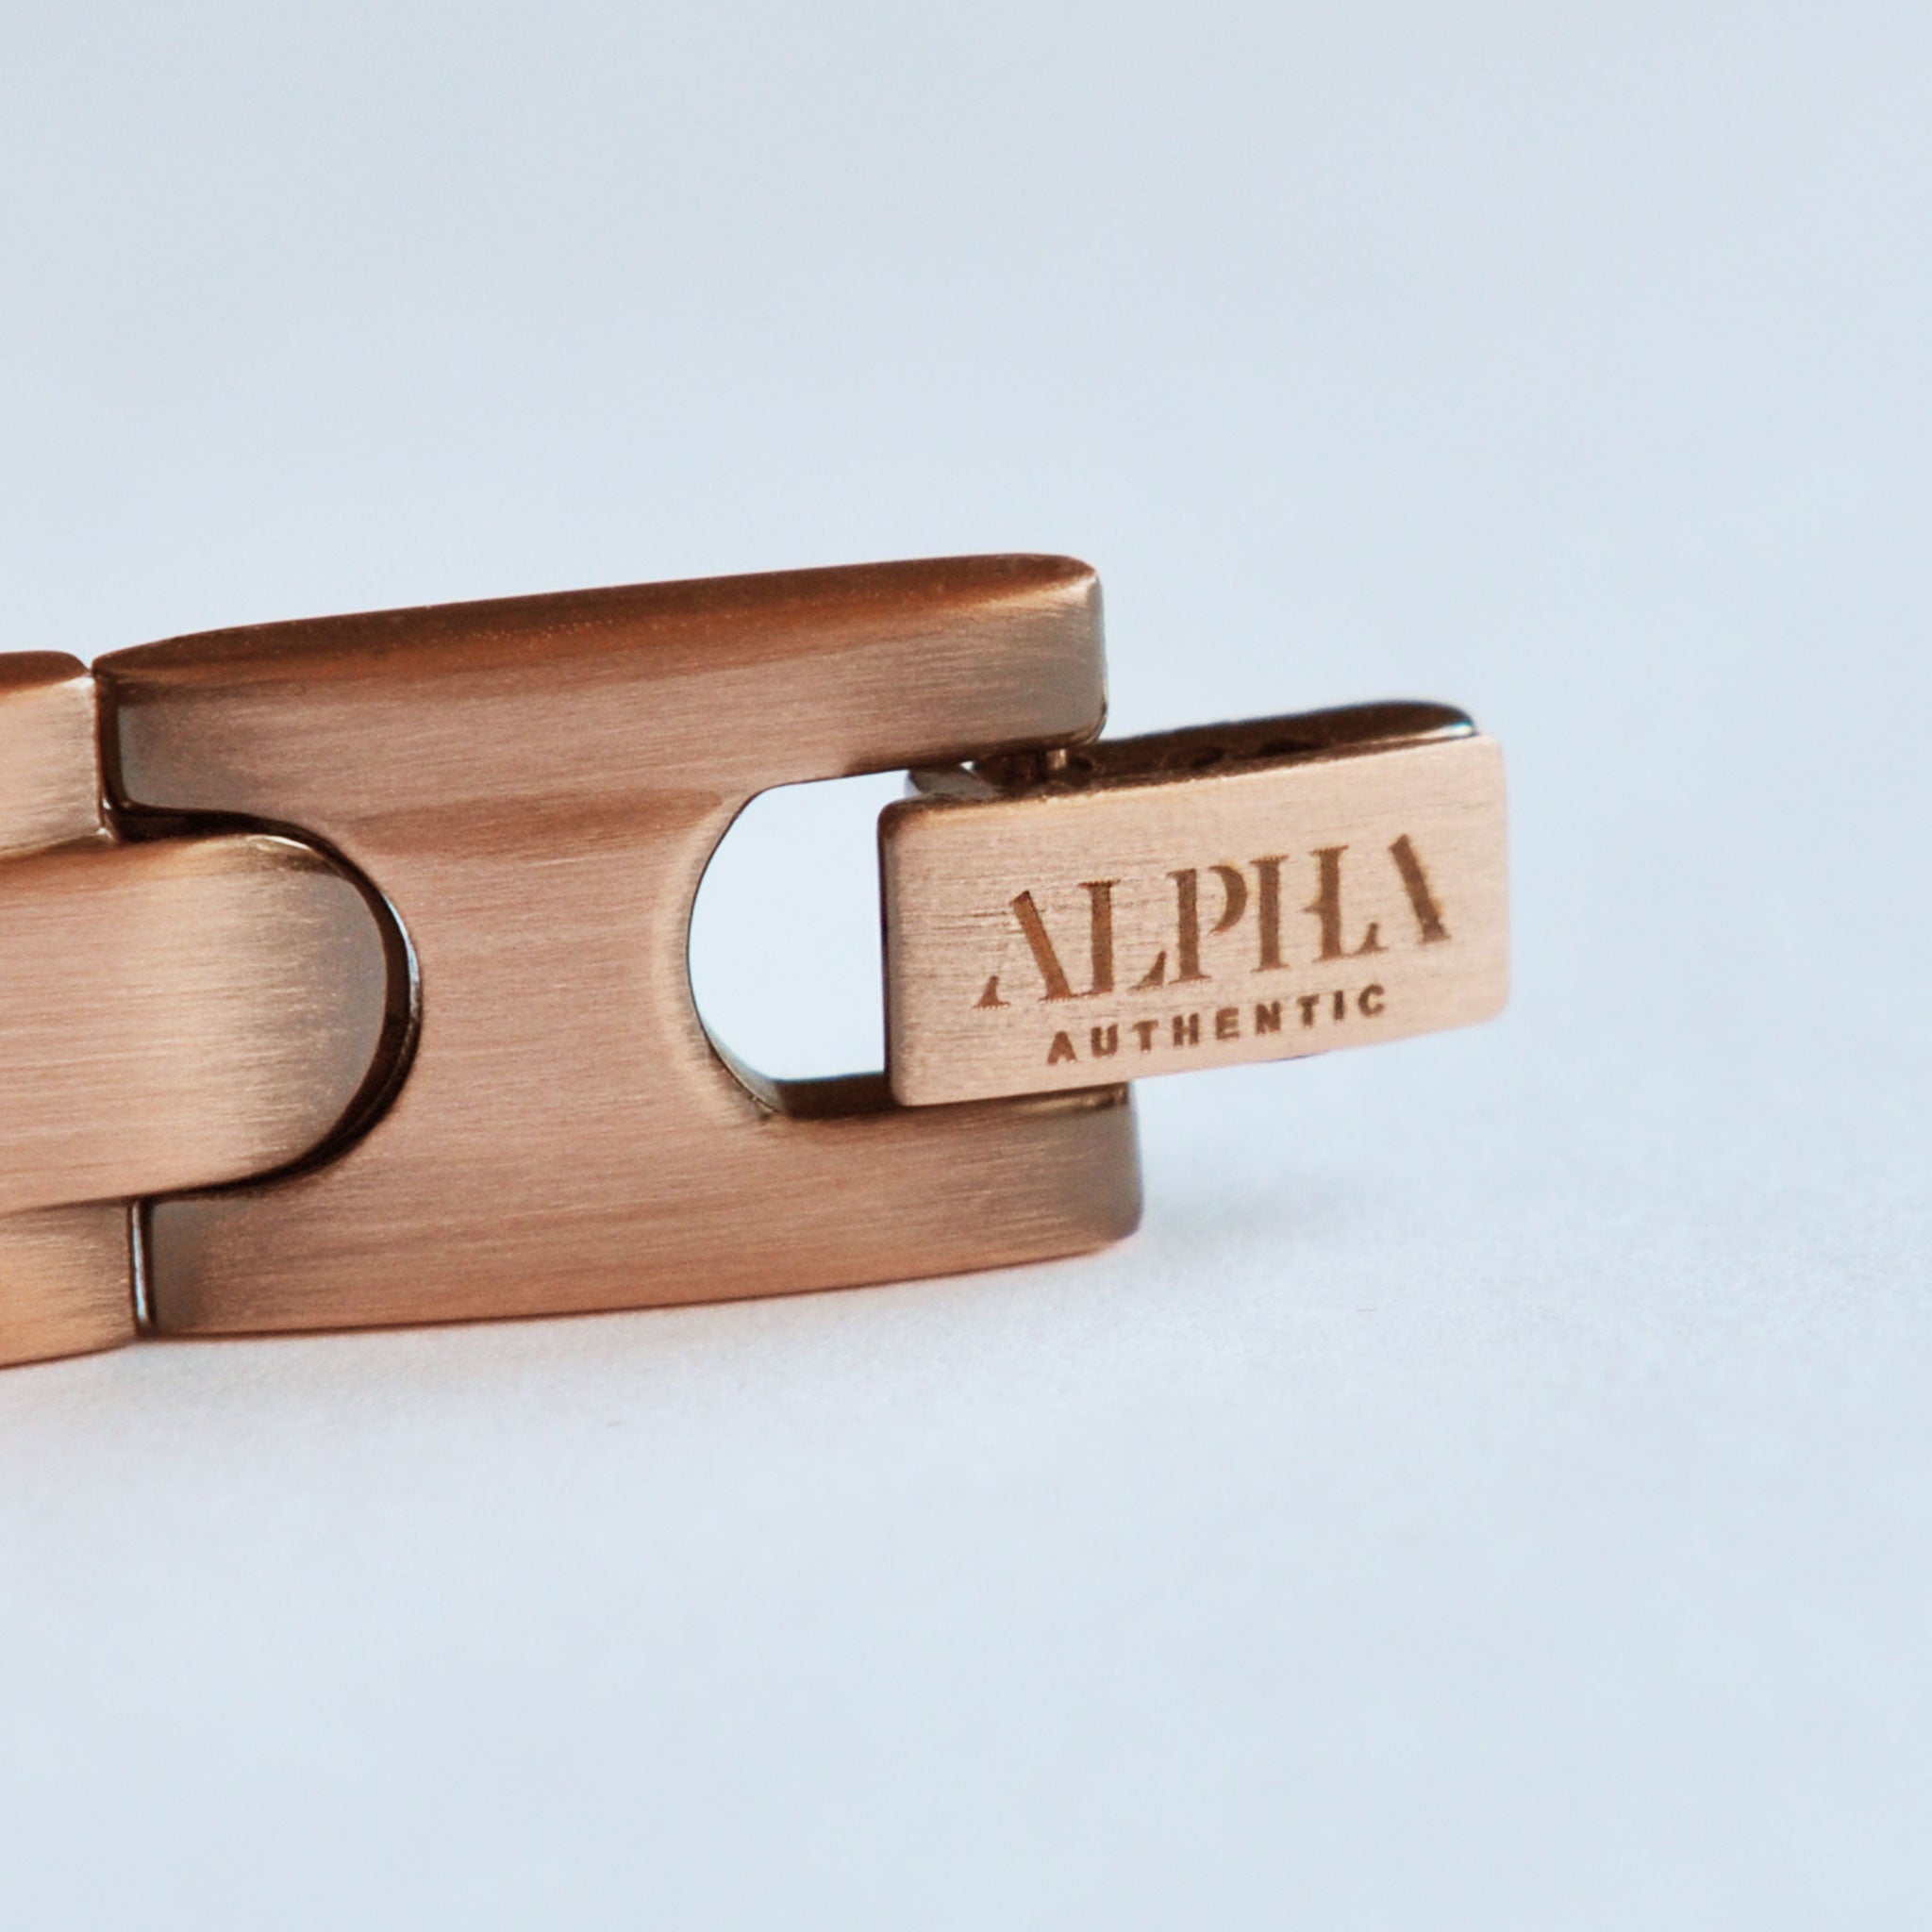 ALPHA logo engraved onto clasp